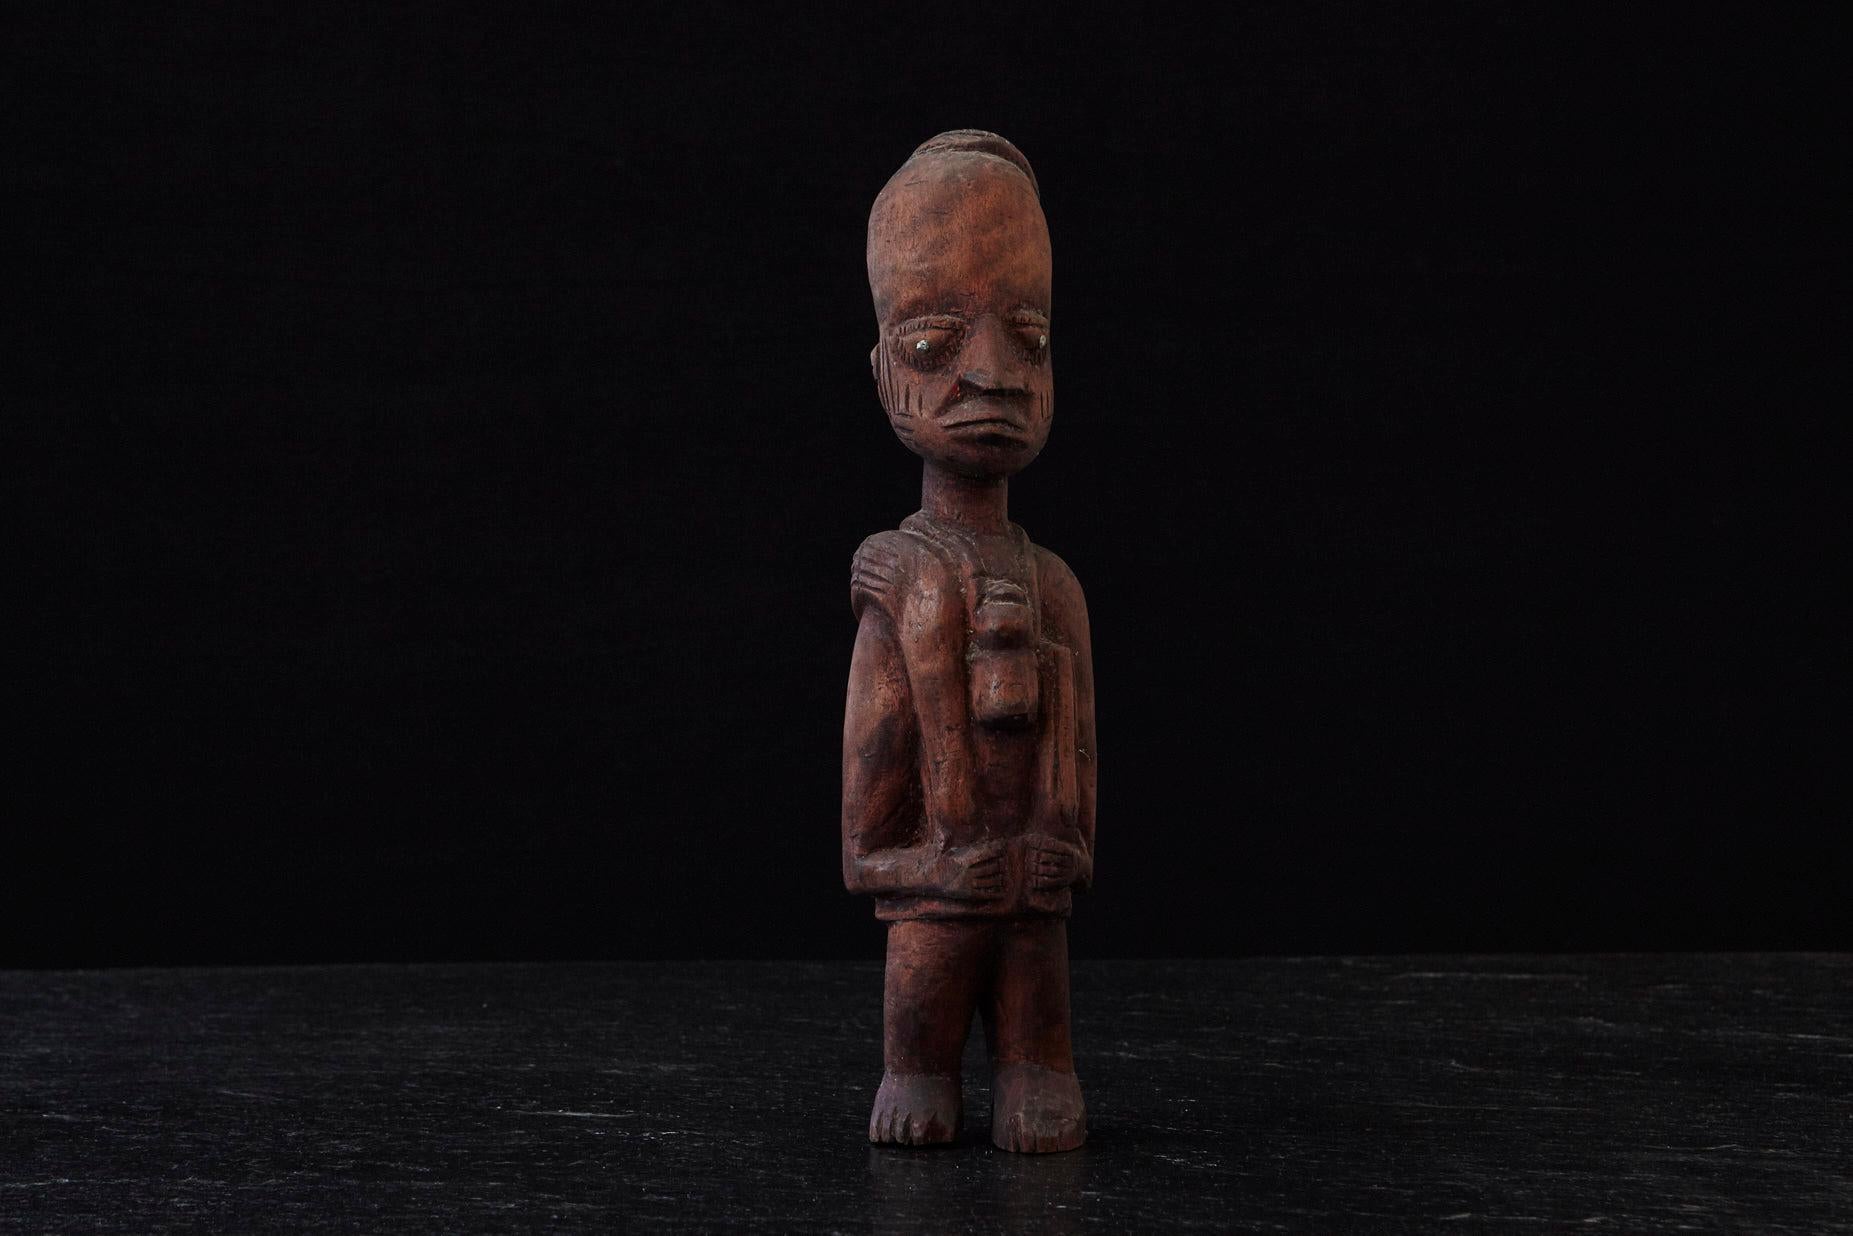 Grande statue en bois sculptée à la main d'un Ju Ju Man, réalisée par le peuple Egba à Abeokuta, dans l'État d'Ogun (partie du Nigeria), vers les années 1940.
Les pupilles sont faites de clous, ce qui renforce le regard et l'expression de Ju Ju Man,